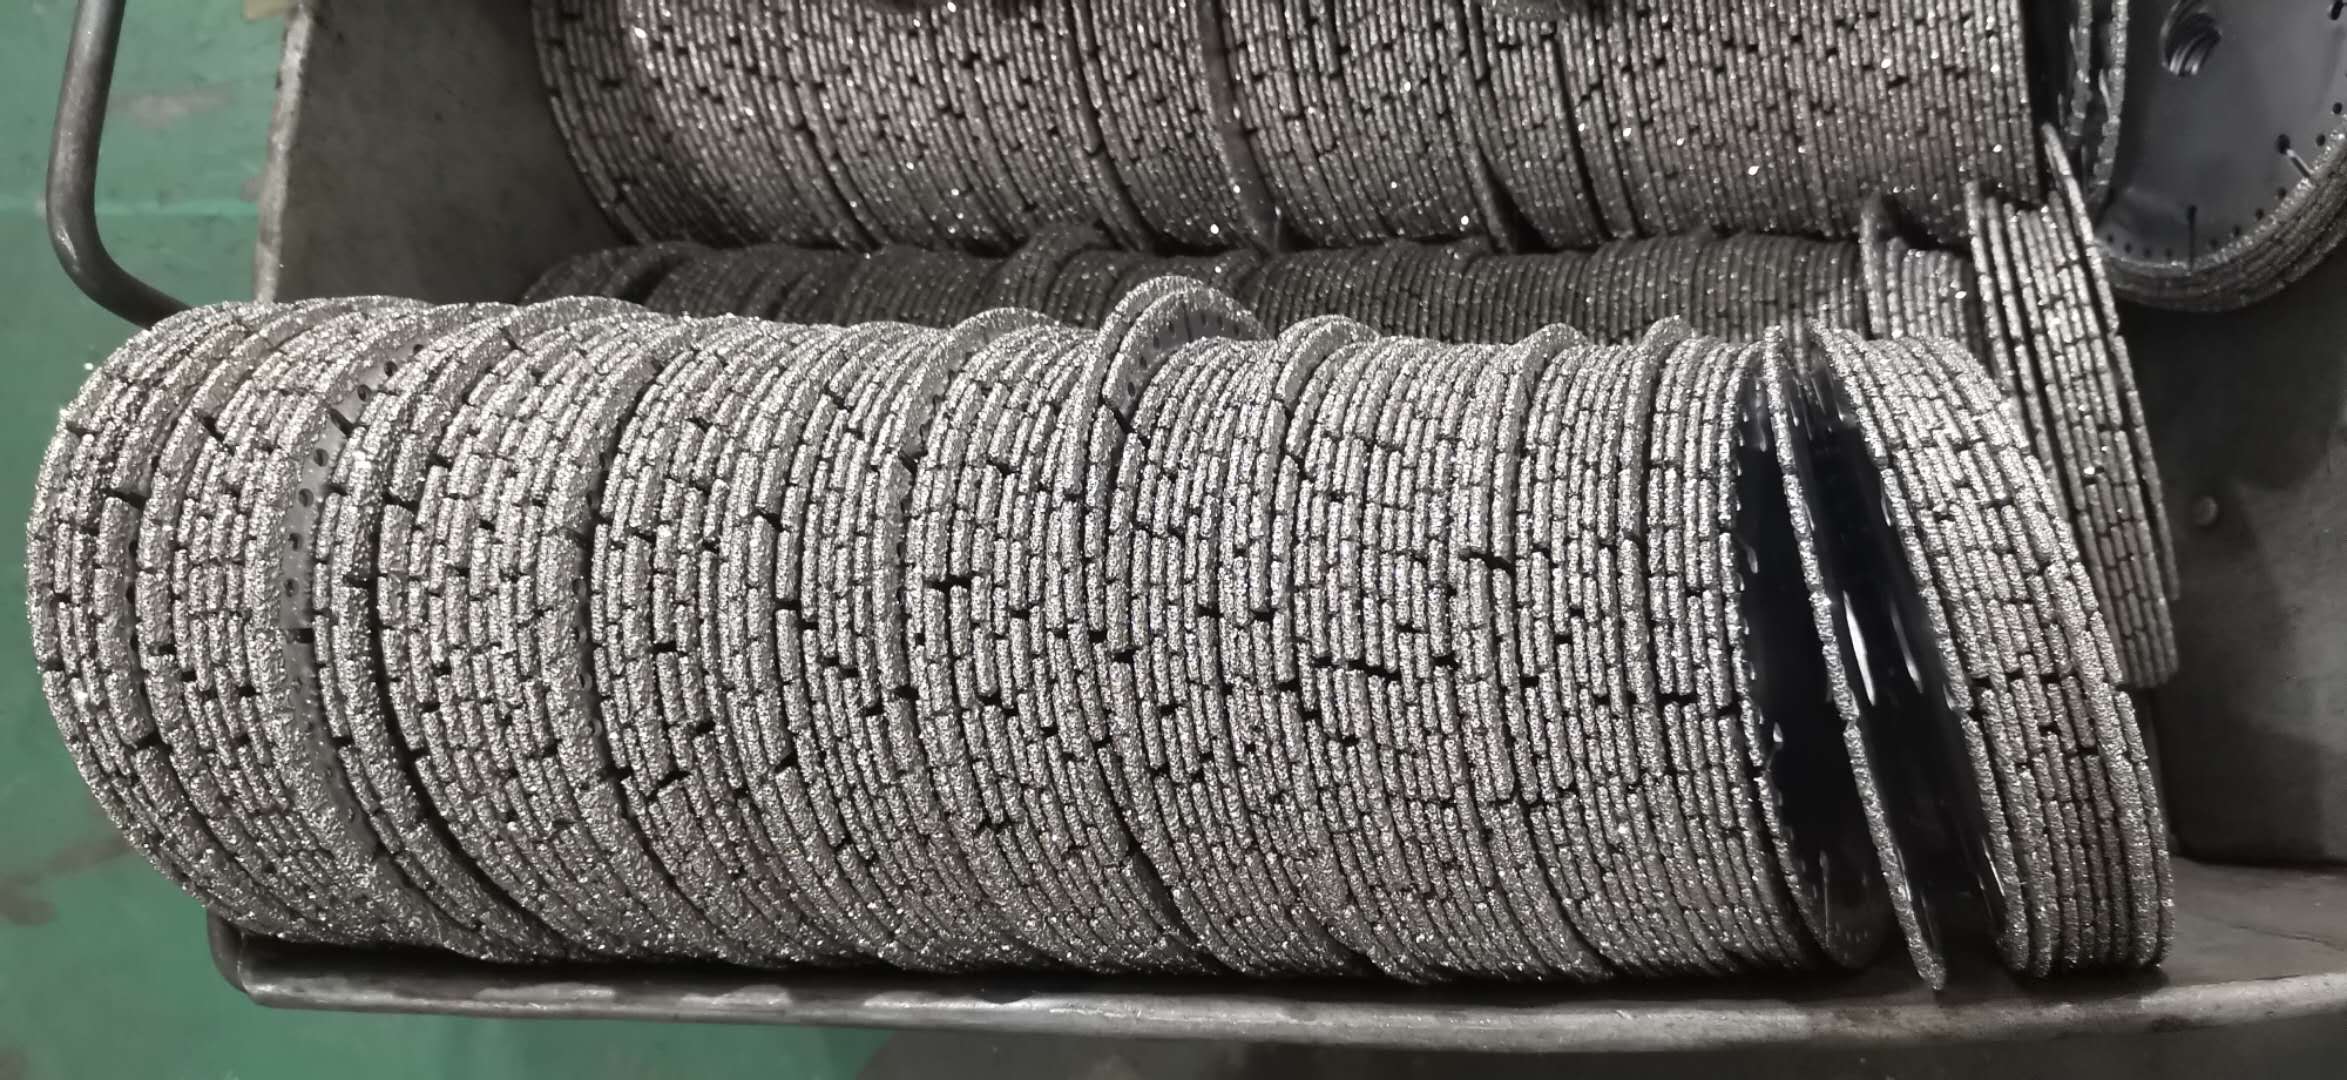 钎焊金刚石锯片自动布料生产线产品展示